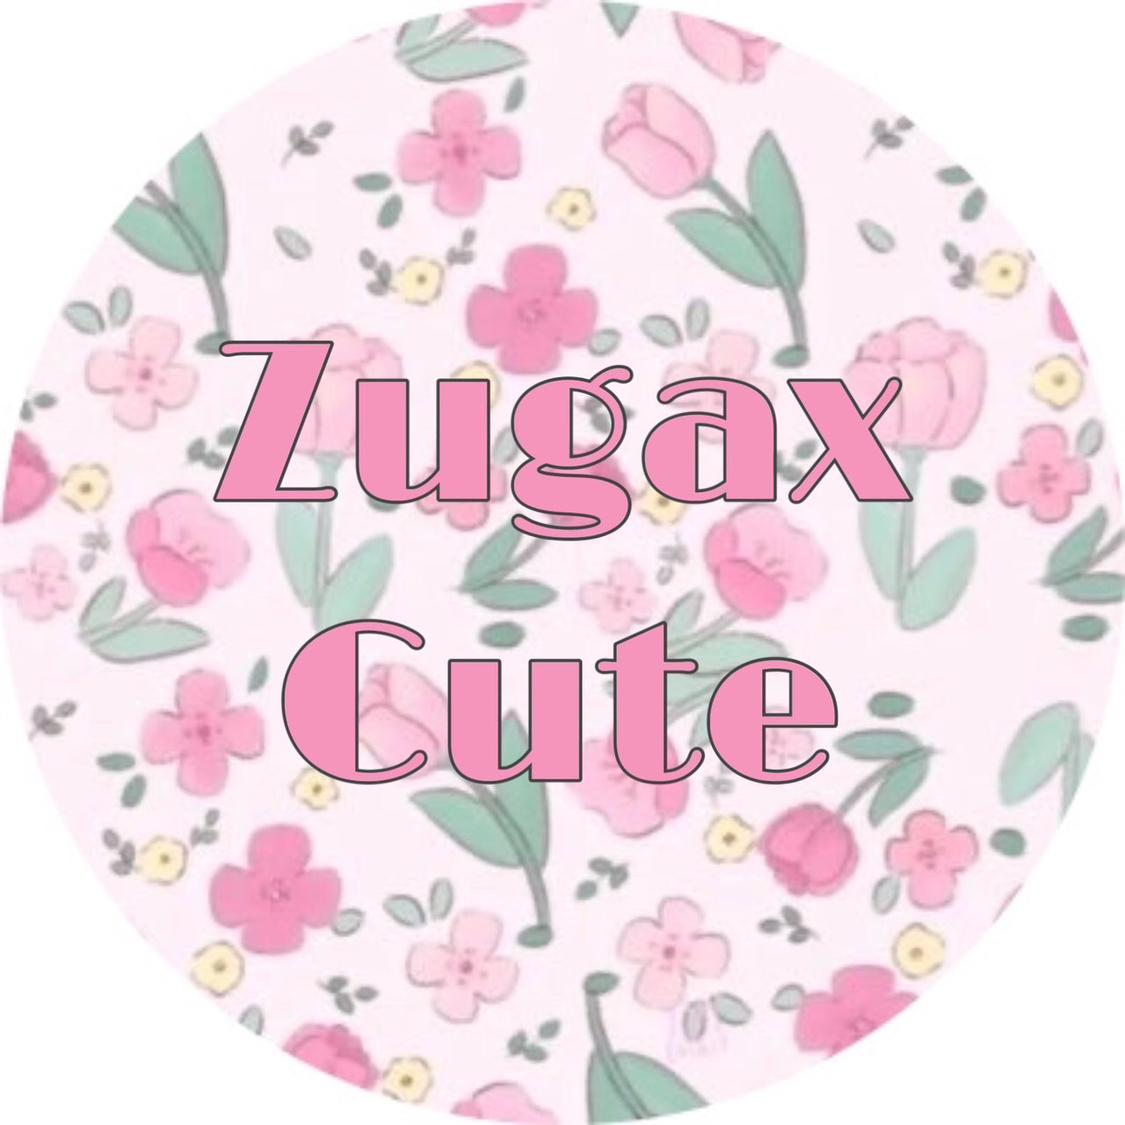 รูปภาพของ Zugax cute